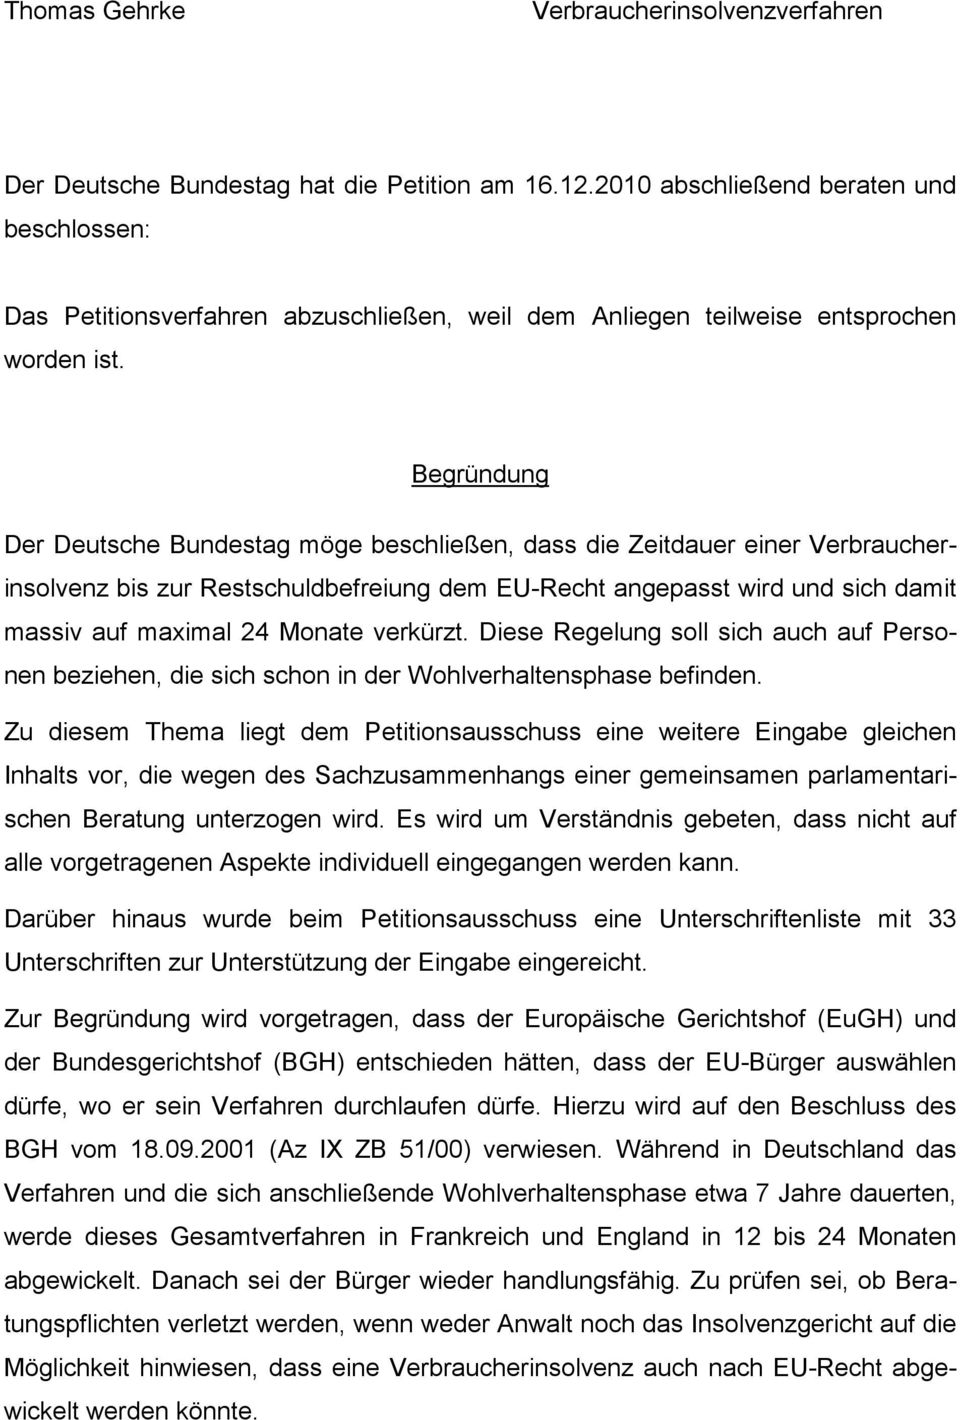 Begründung Der Deutsche Bundestag möge beschließen, dass die Zeitdauer einer Verbraucherinsolvenz bis zur Restschuldbefreiung dem EU-Recht angepasst wird und sich damit massiv auf maximal 24 Monate